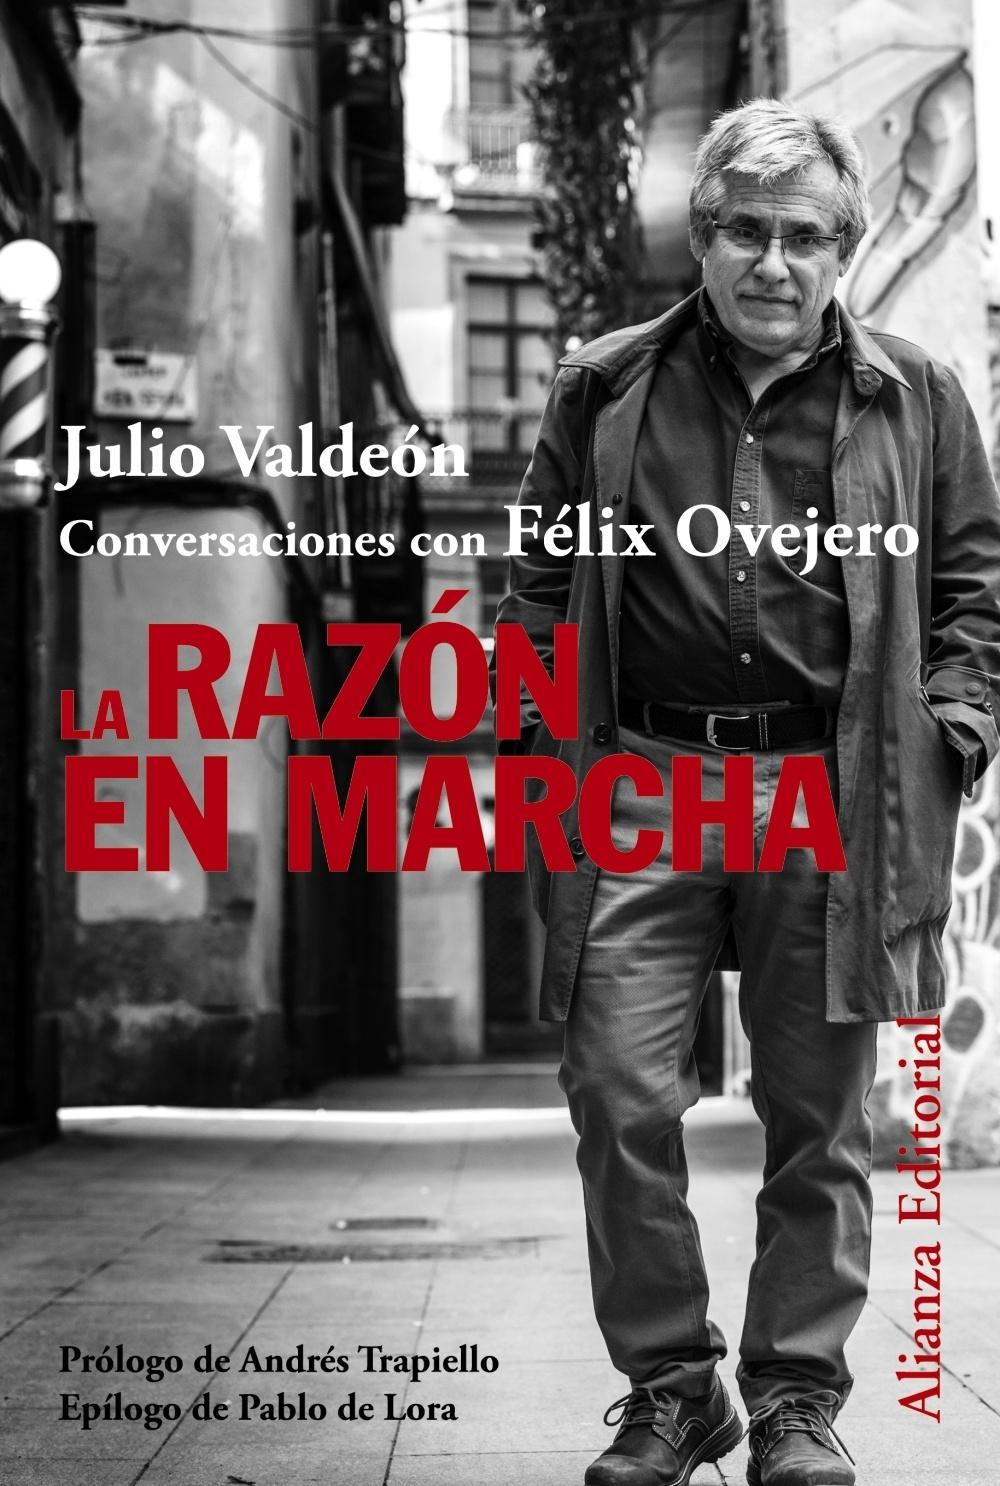 La Razón en Marcha "Julio Valdeón Conversaciones con Felix Ovejero"